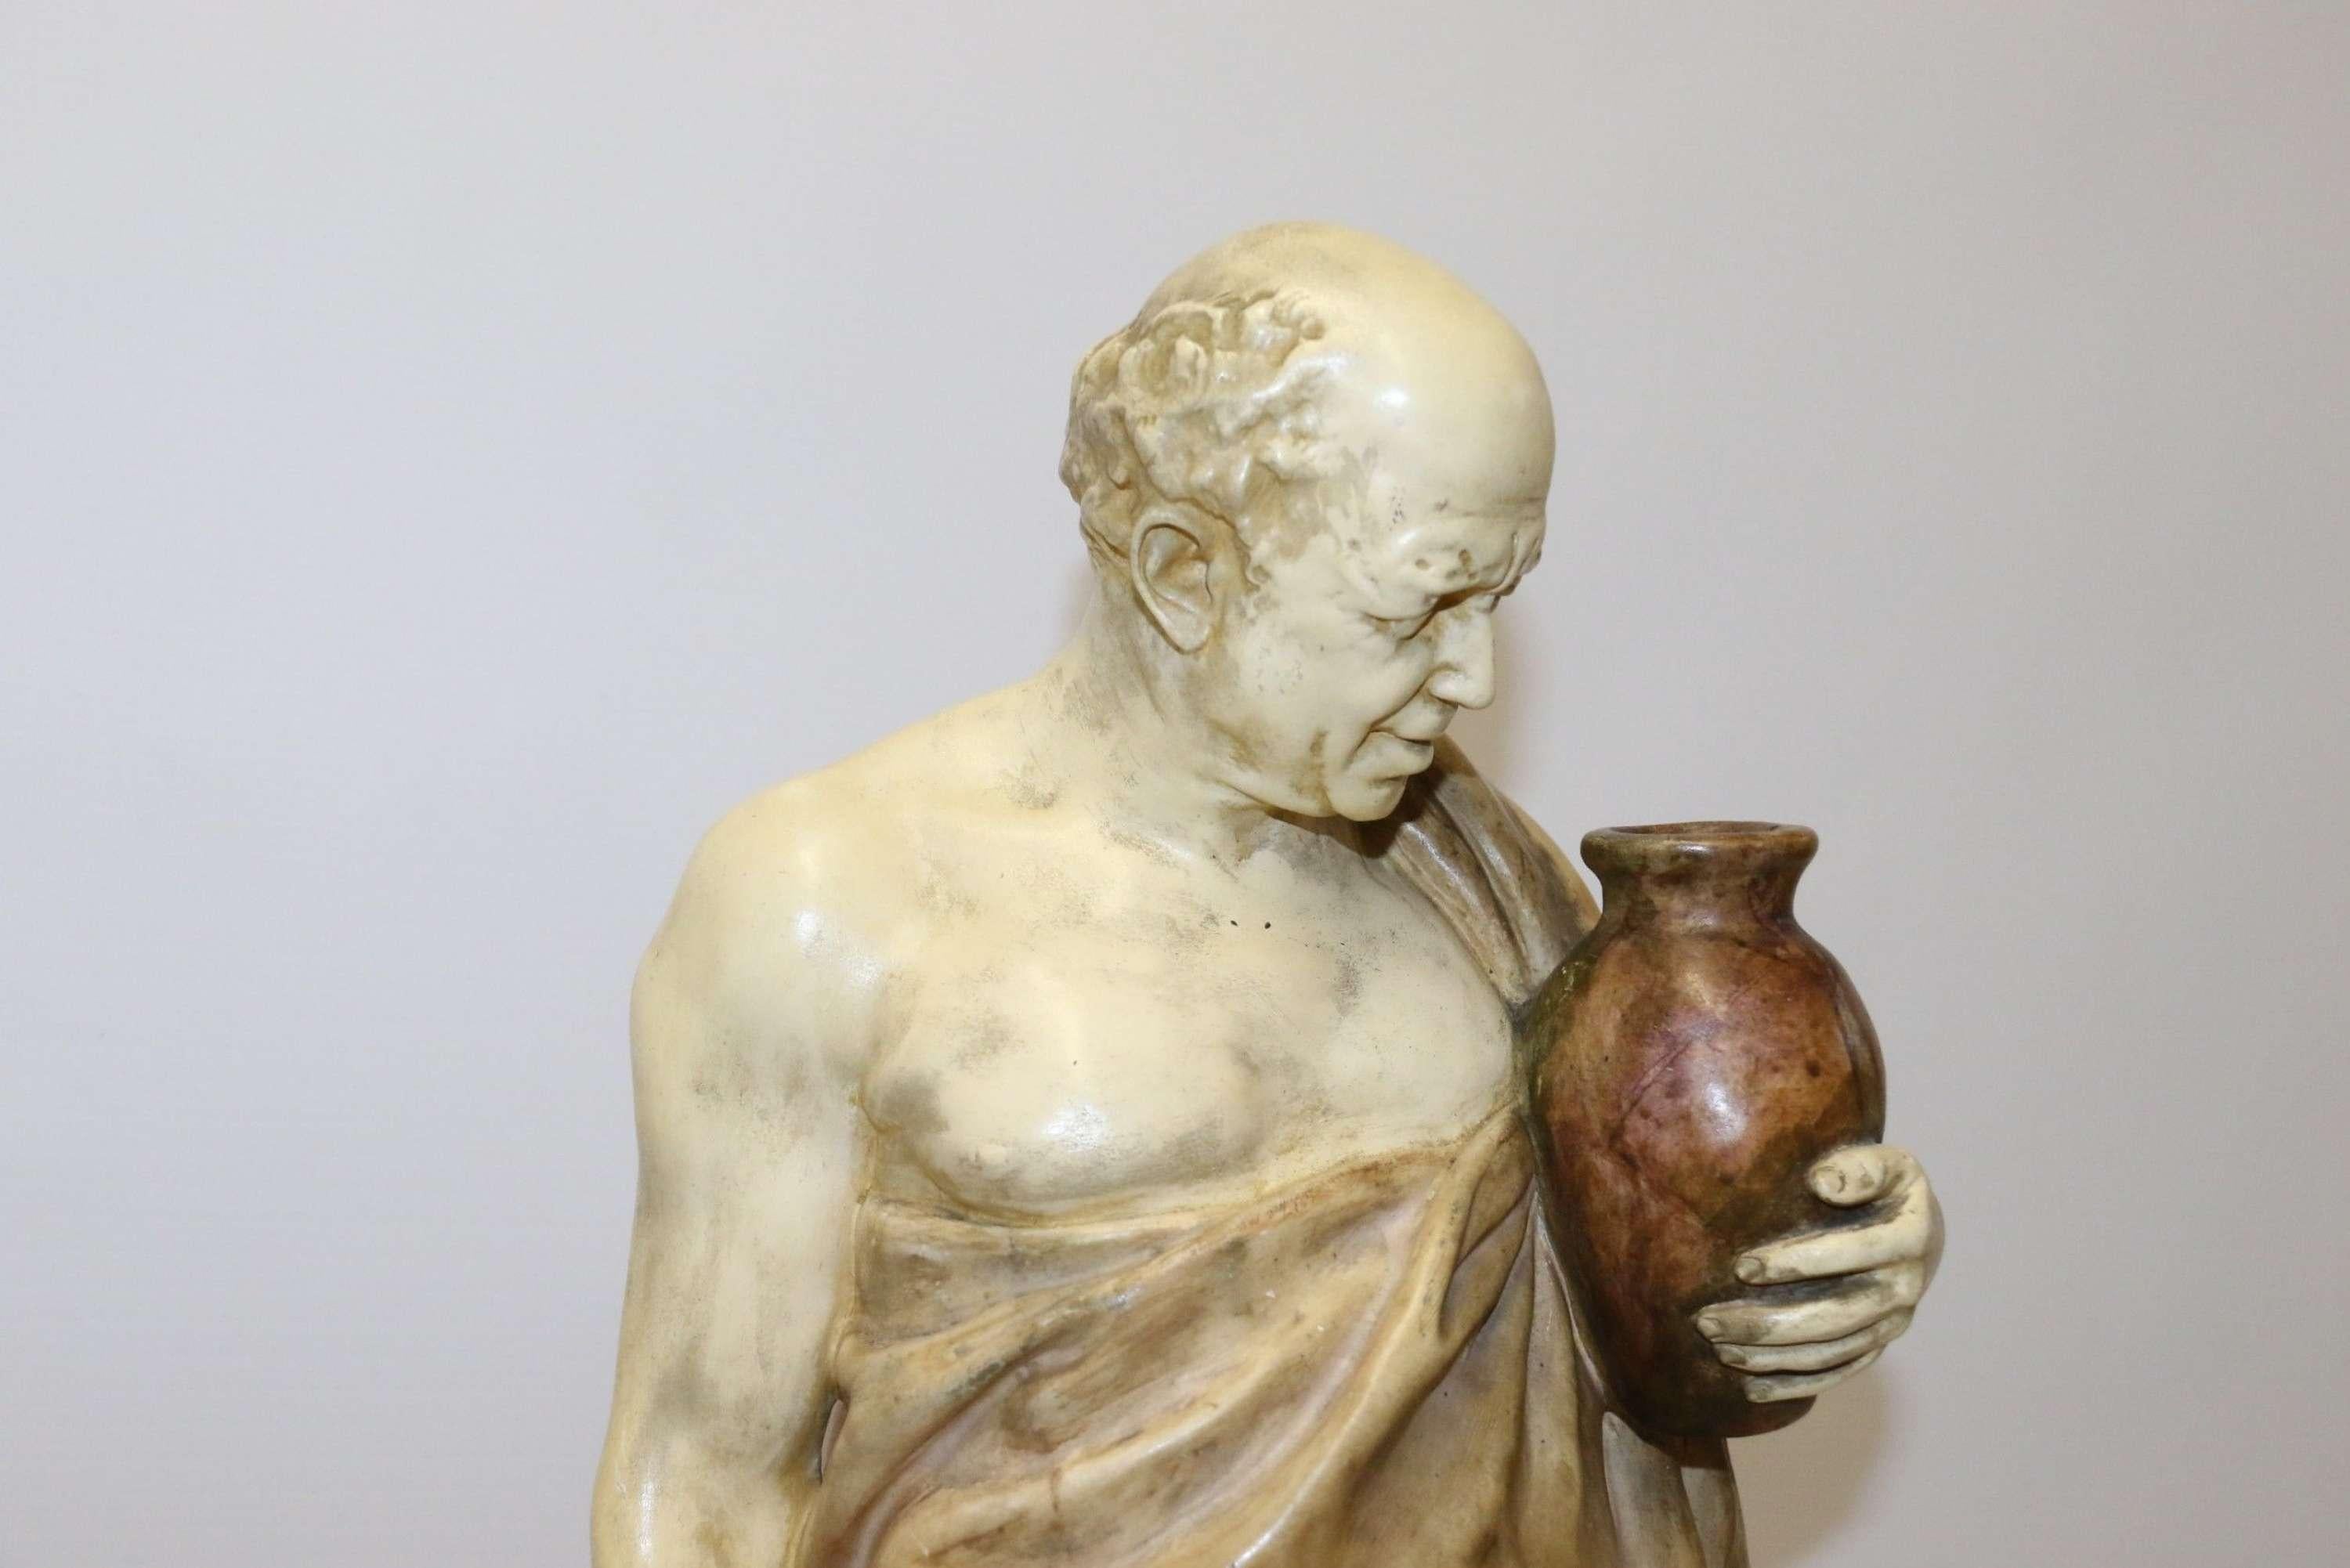 Große klassische römische Figur aus Goldscheider Keramik

Diese beeindruckende und sehr dekorative Keramikfigur aus dem späten 19. Jahrhundert wurde in der Friedrich Goldscheider Fabrik in Wien, Österreich, hergestellt. Es ist wunderschön modelliert